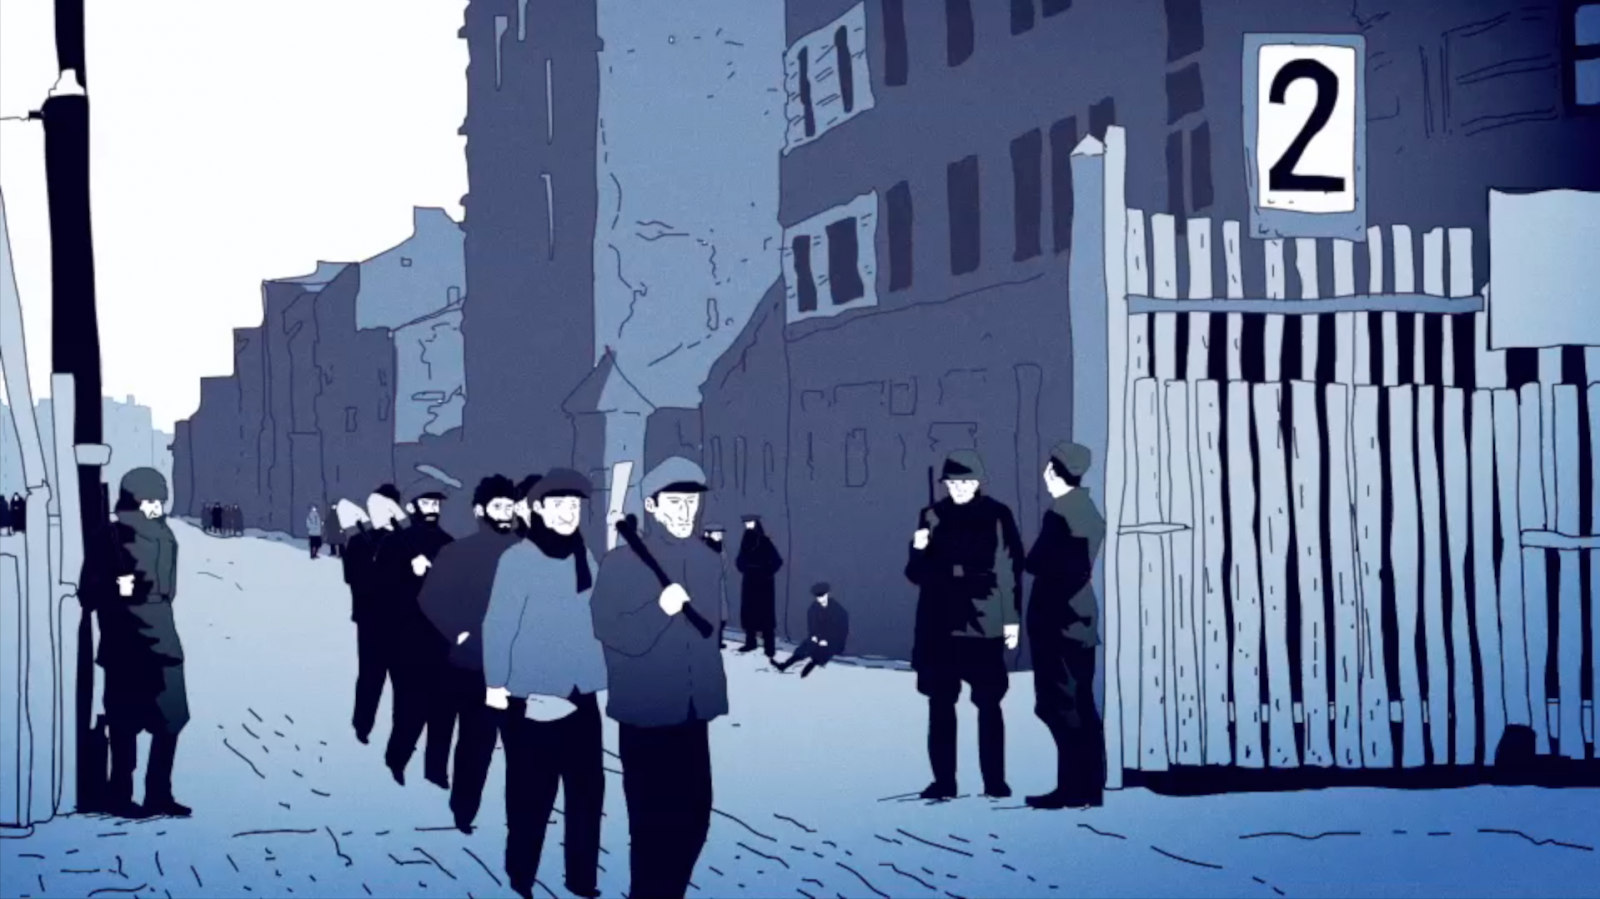 Kadr z filmu "Nie było żadnej nadziei", przedstawia bramę wejściową do getta warszawskiego